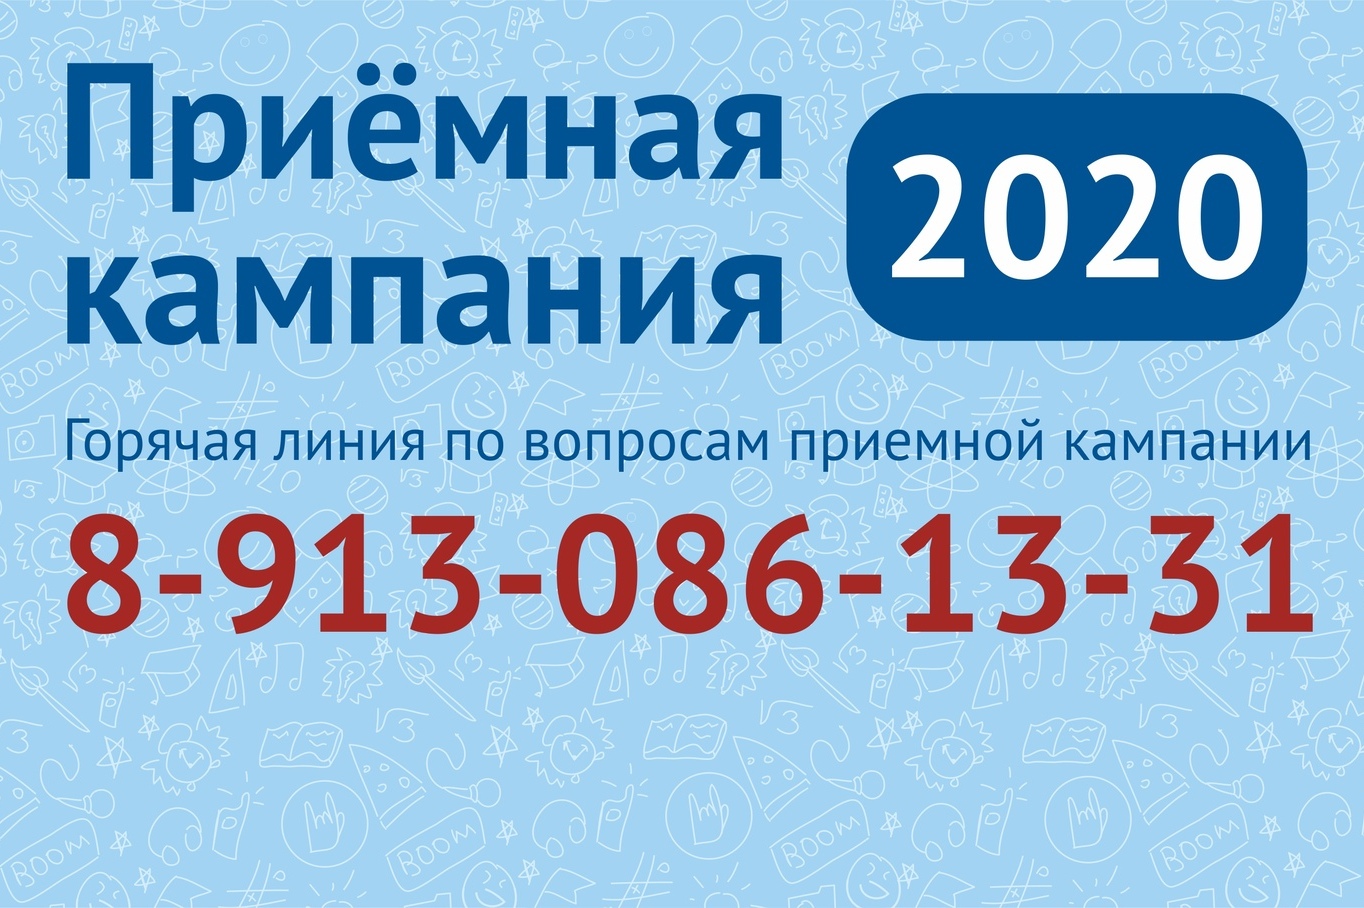 Новости приемной кампании-2020 АлтГПУ: за месяц работы принято от абитуриентов 2745 заявлений